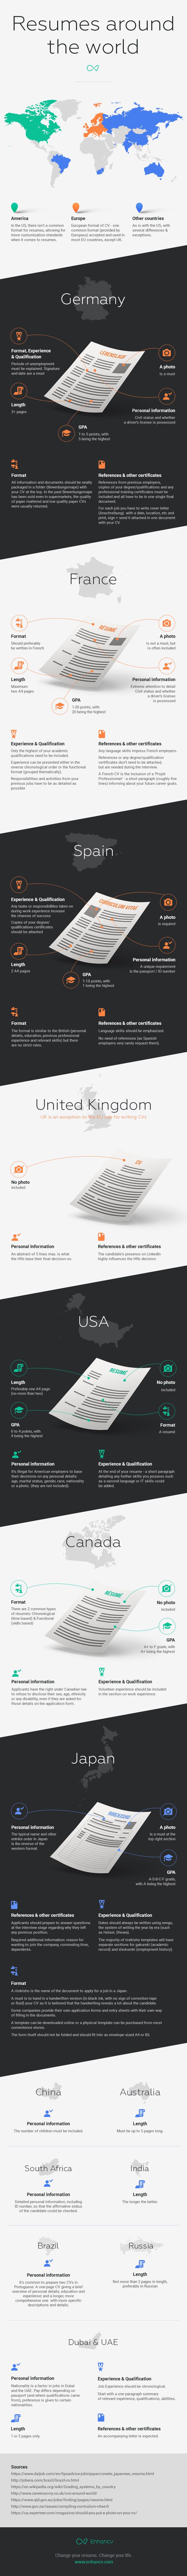 Infografik - Resumes around the world by Enhancv